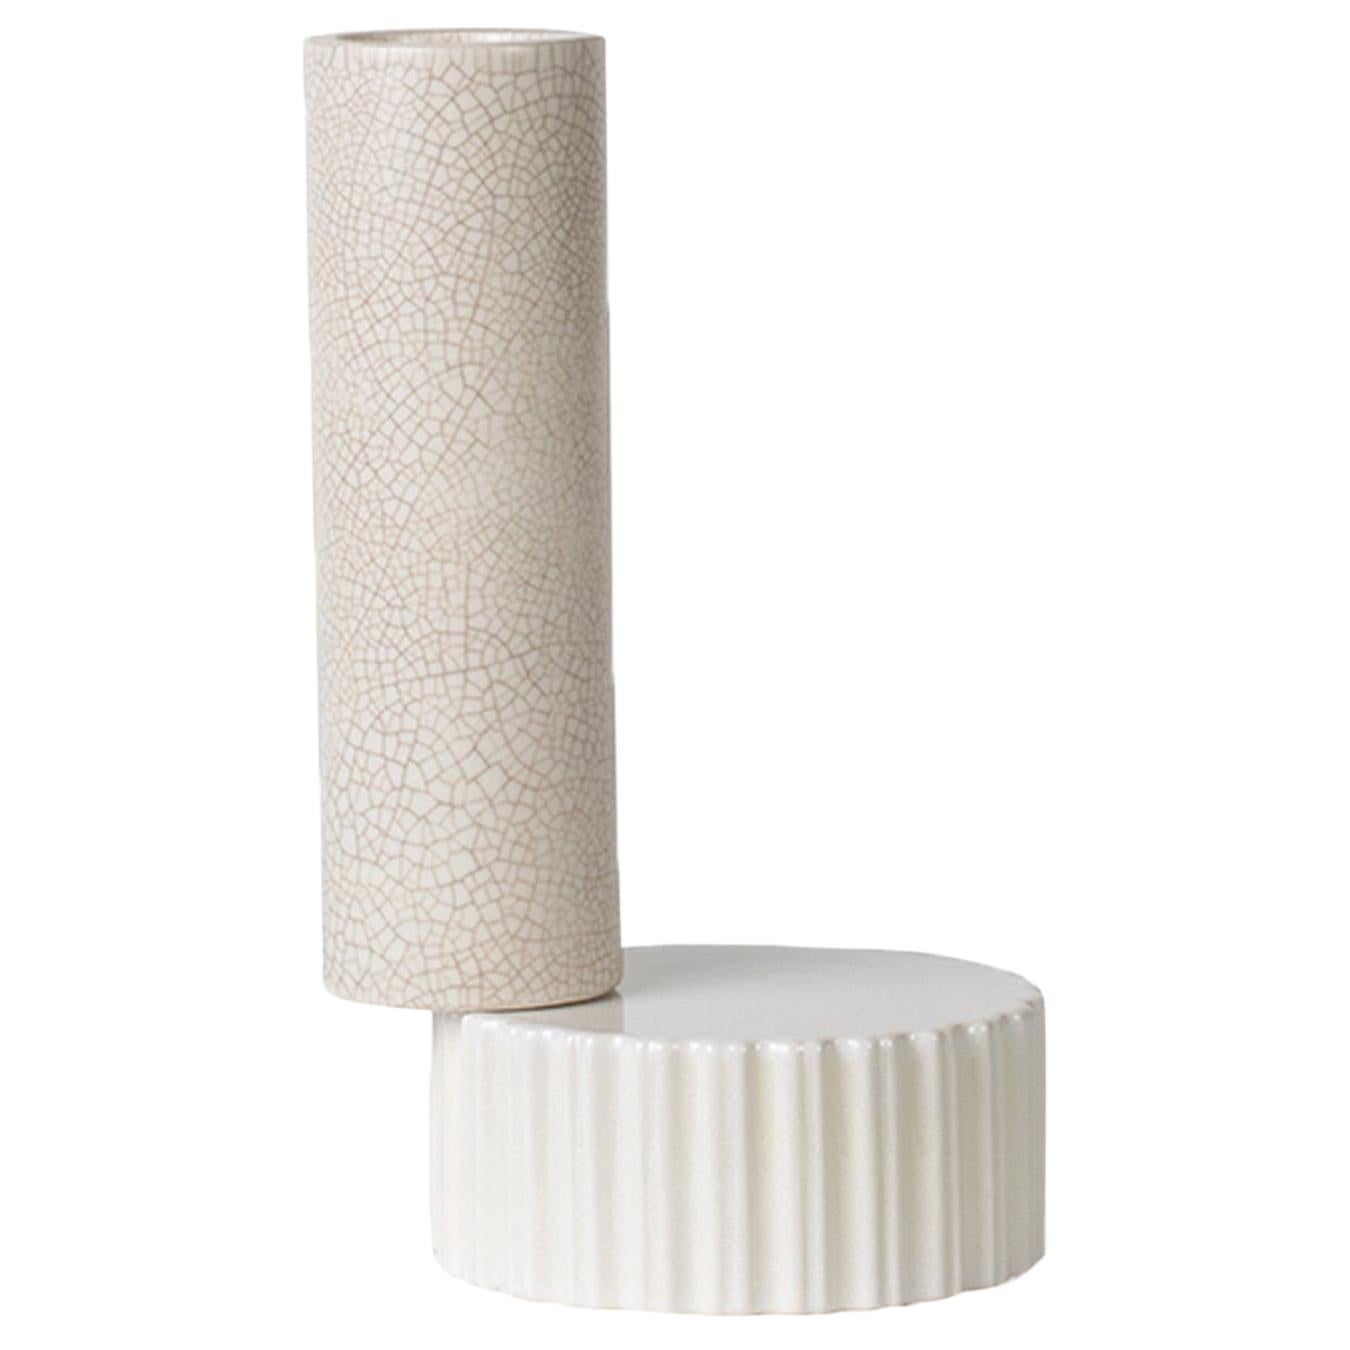 2-Element White Vase by Quincoces-Dragò  For Sale